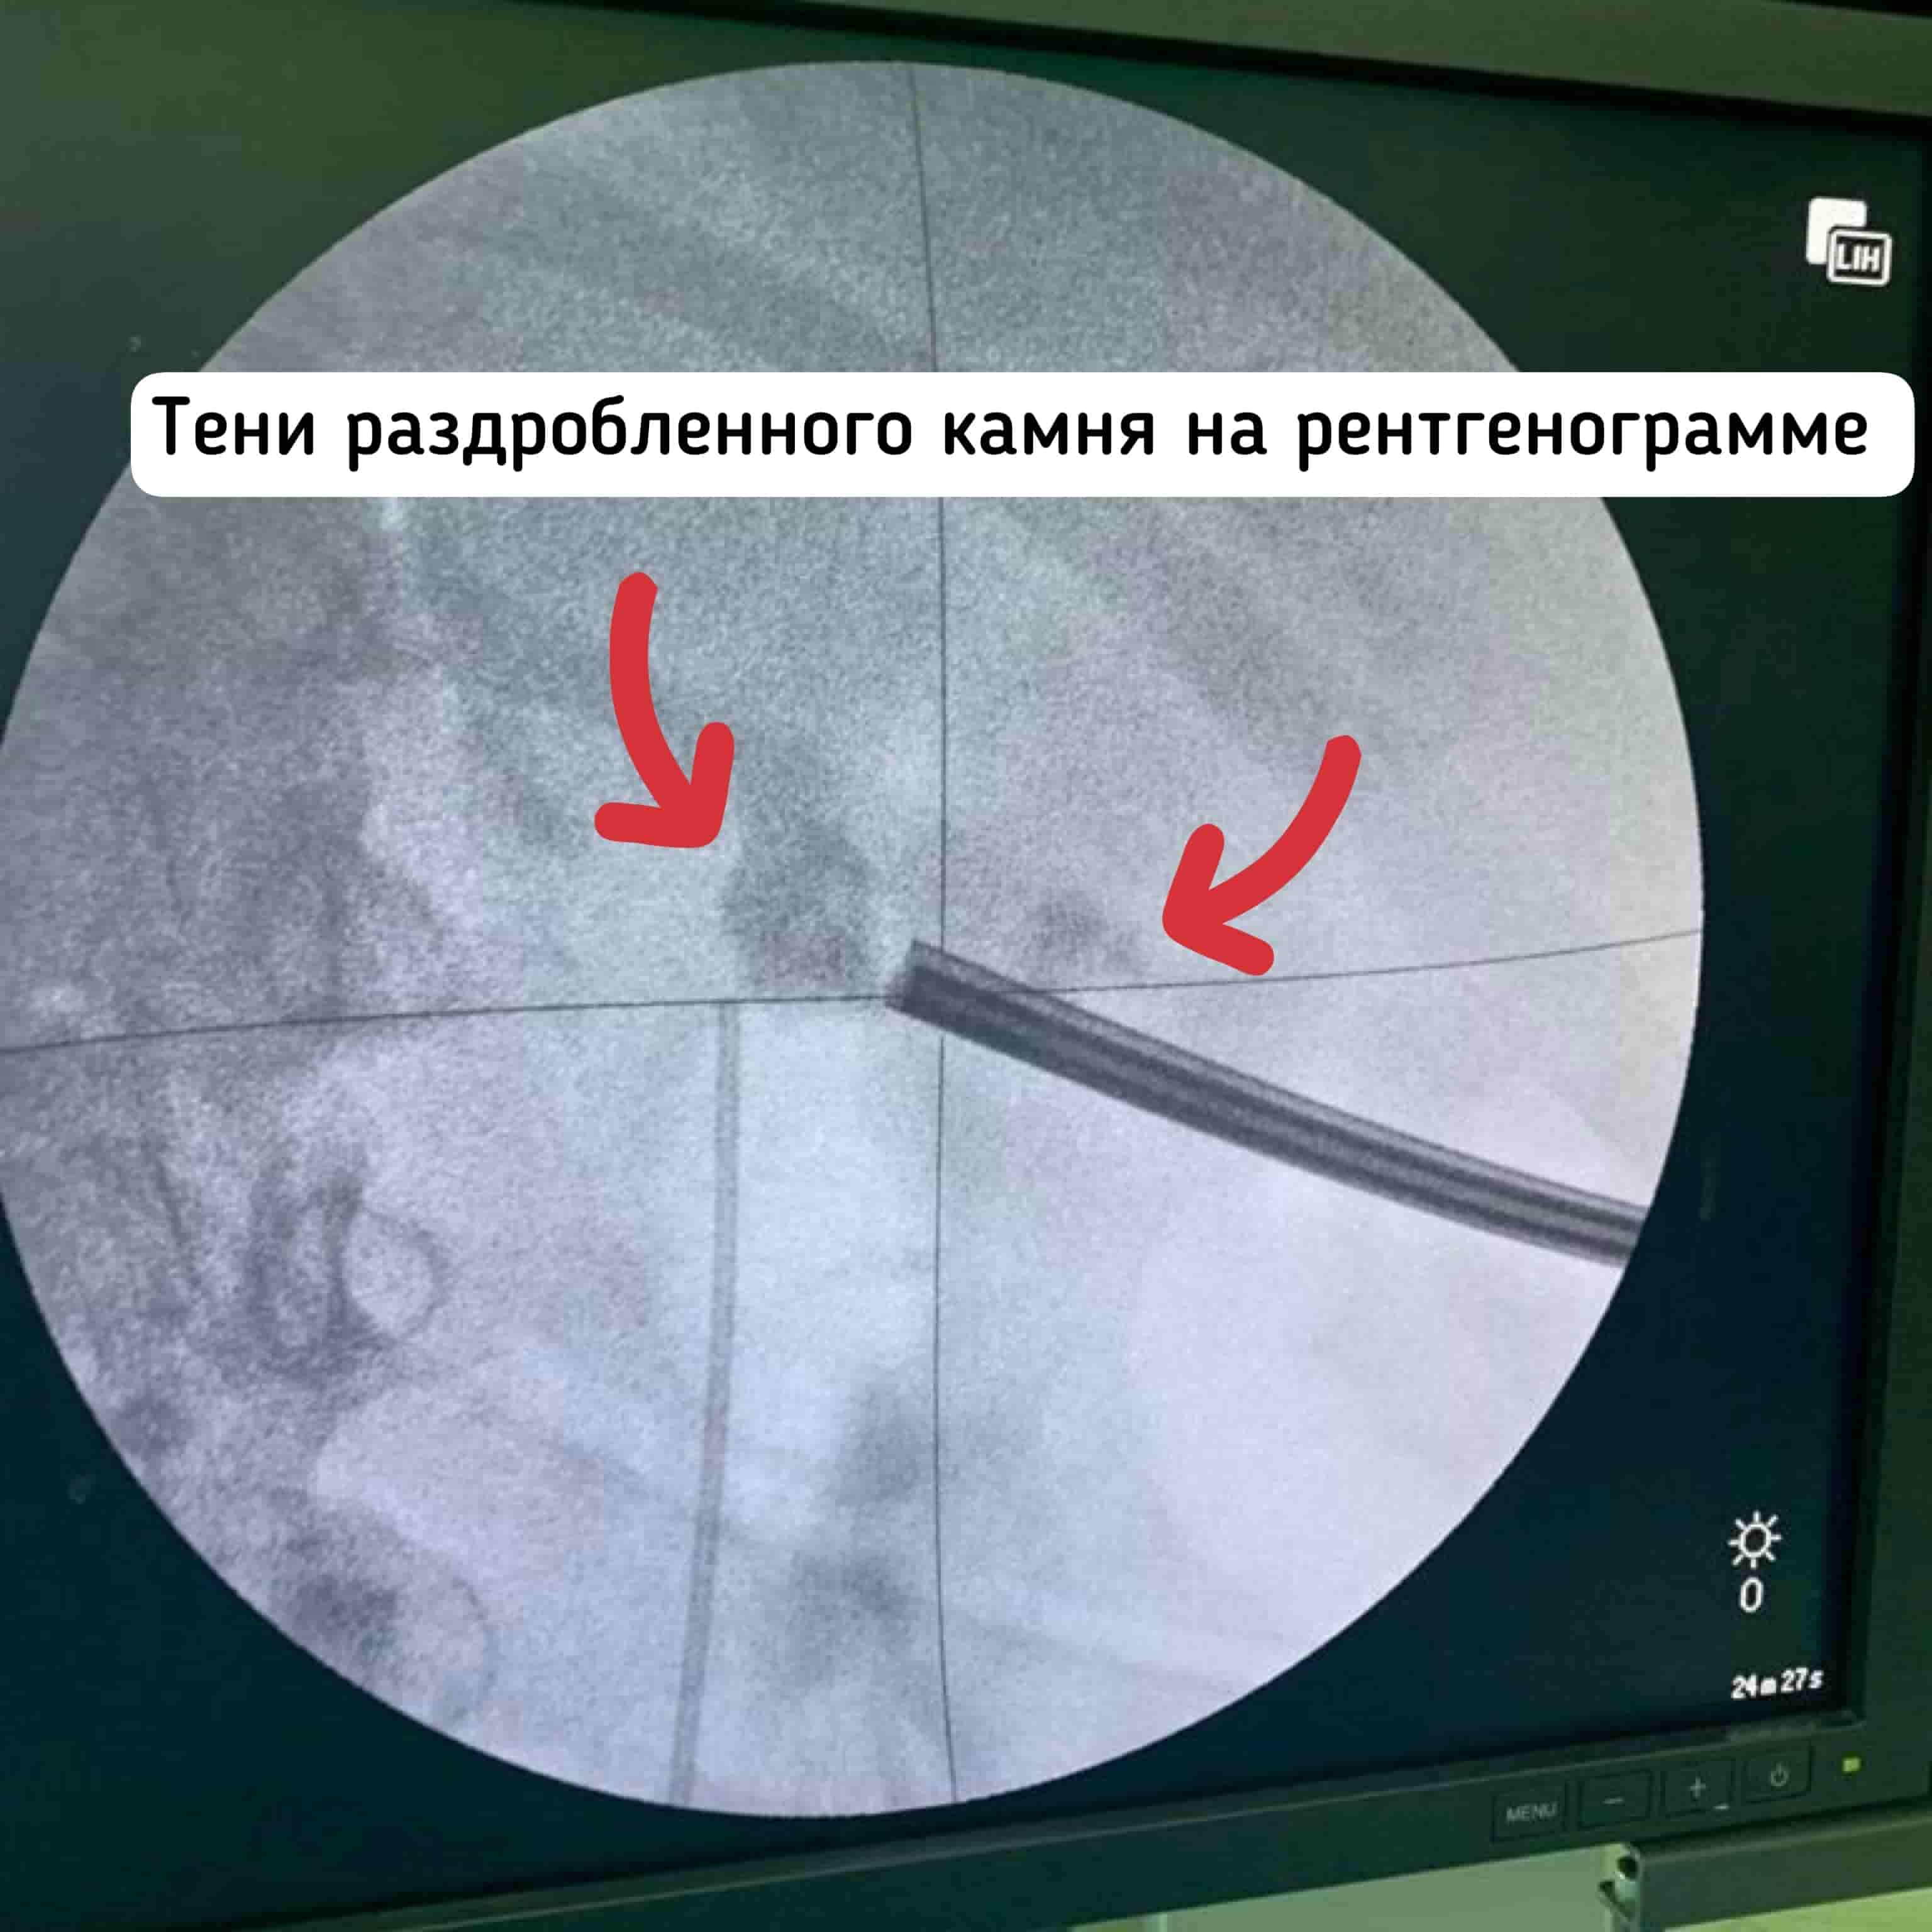 Удаление камня 4 см из почки в Москве, операция лазерное волокно, ультразвук